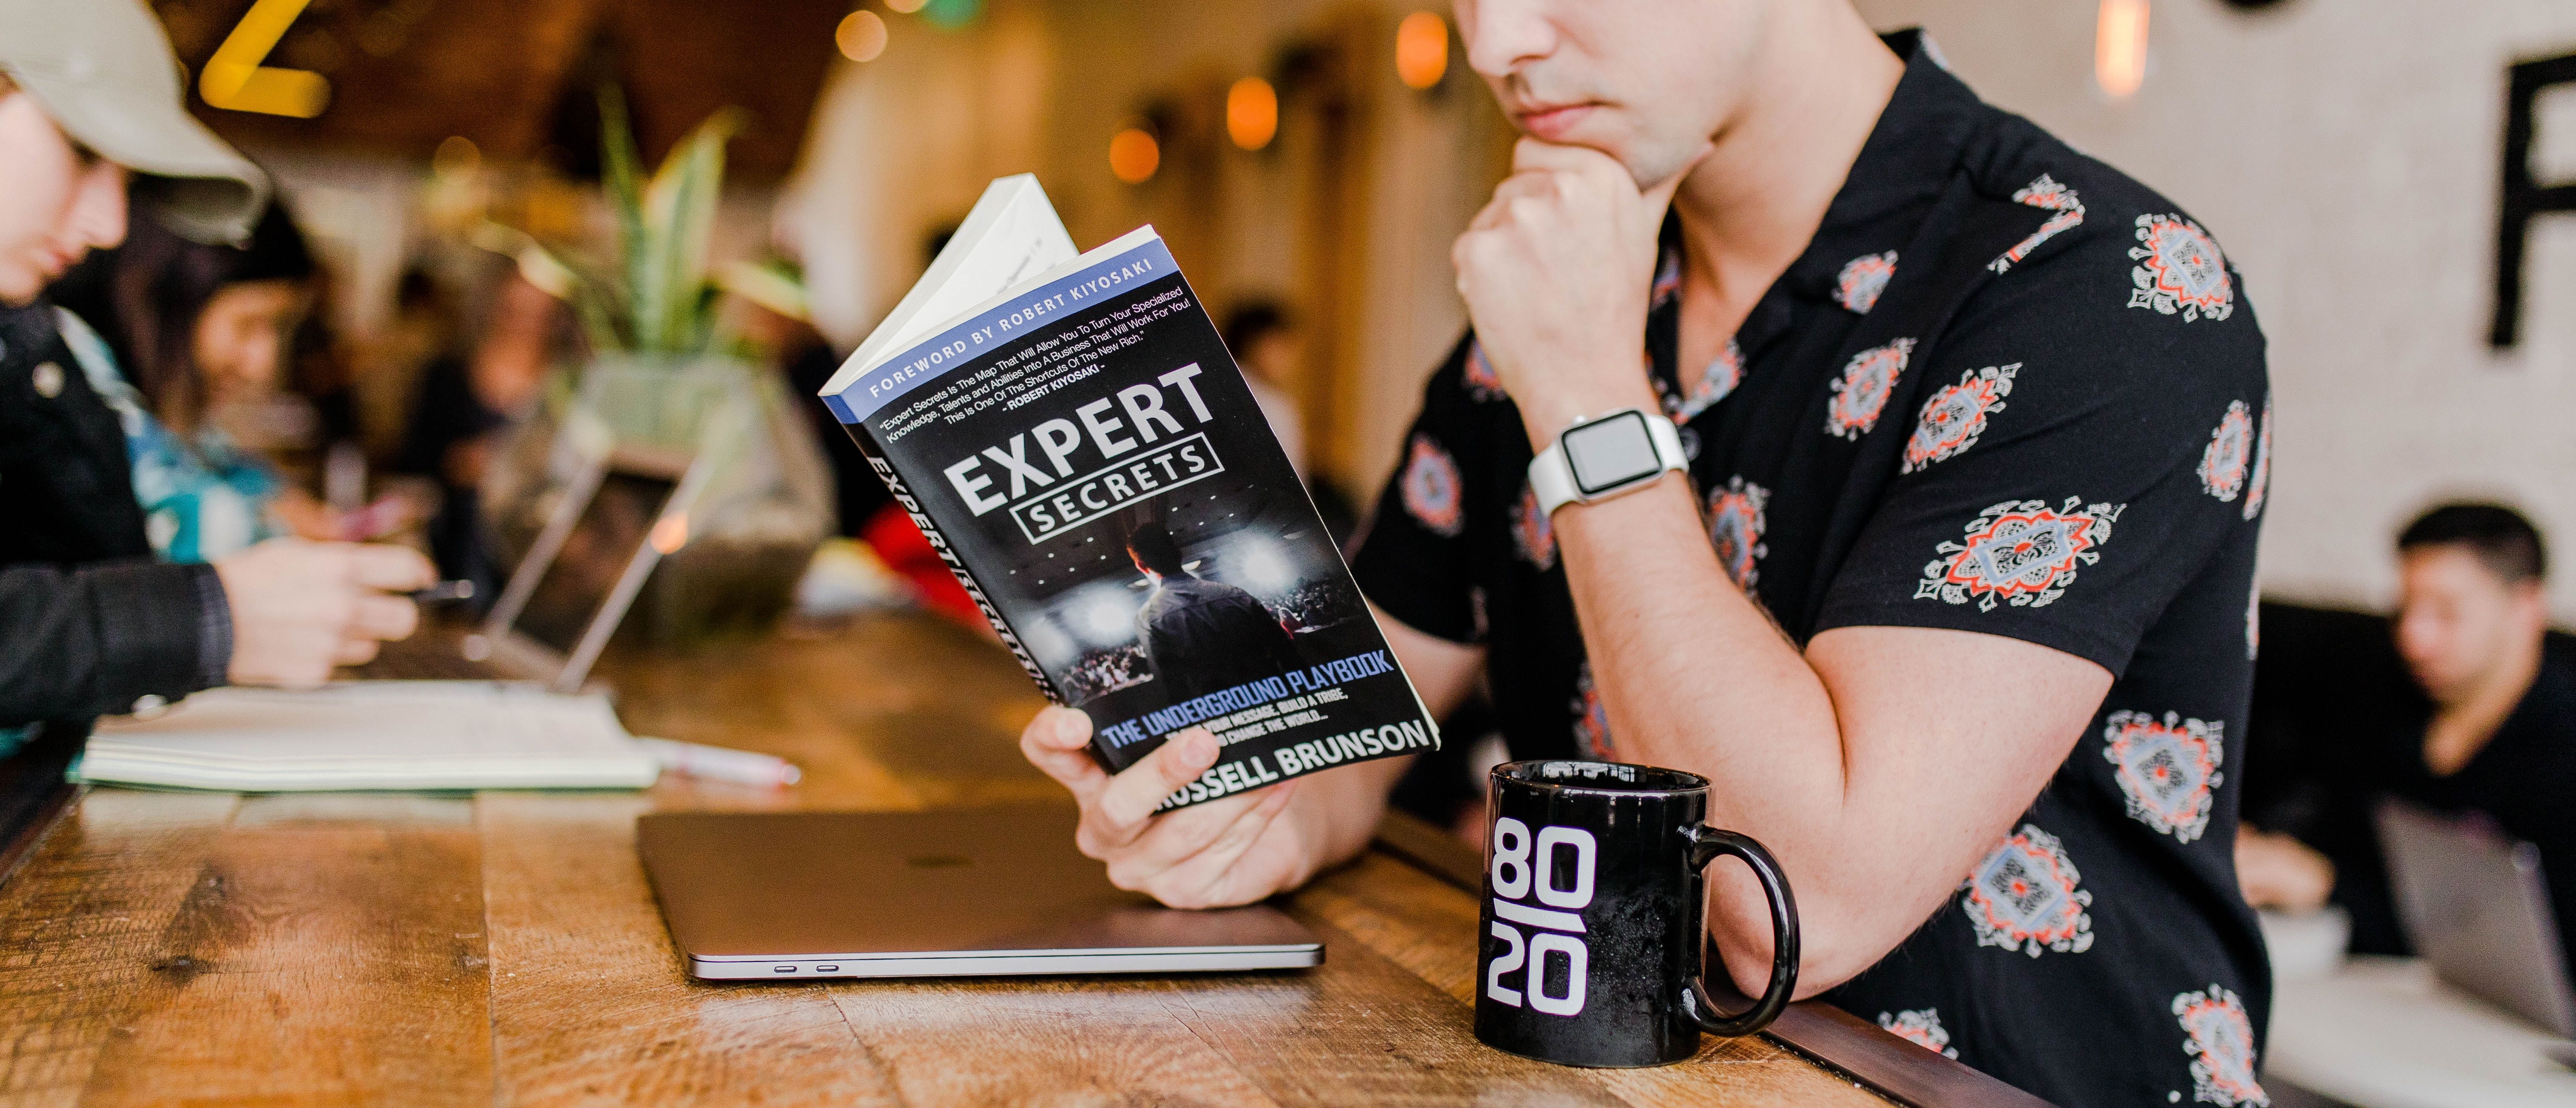 Man reading Expert Secrets Book